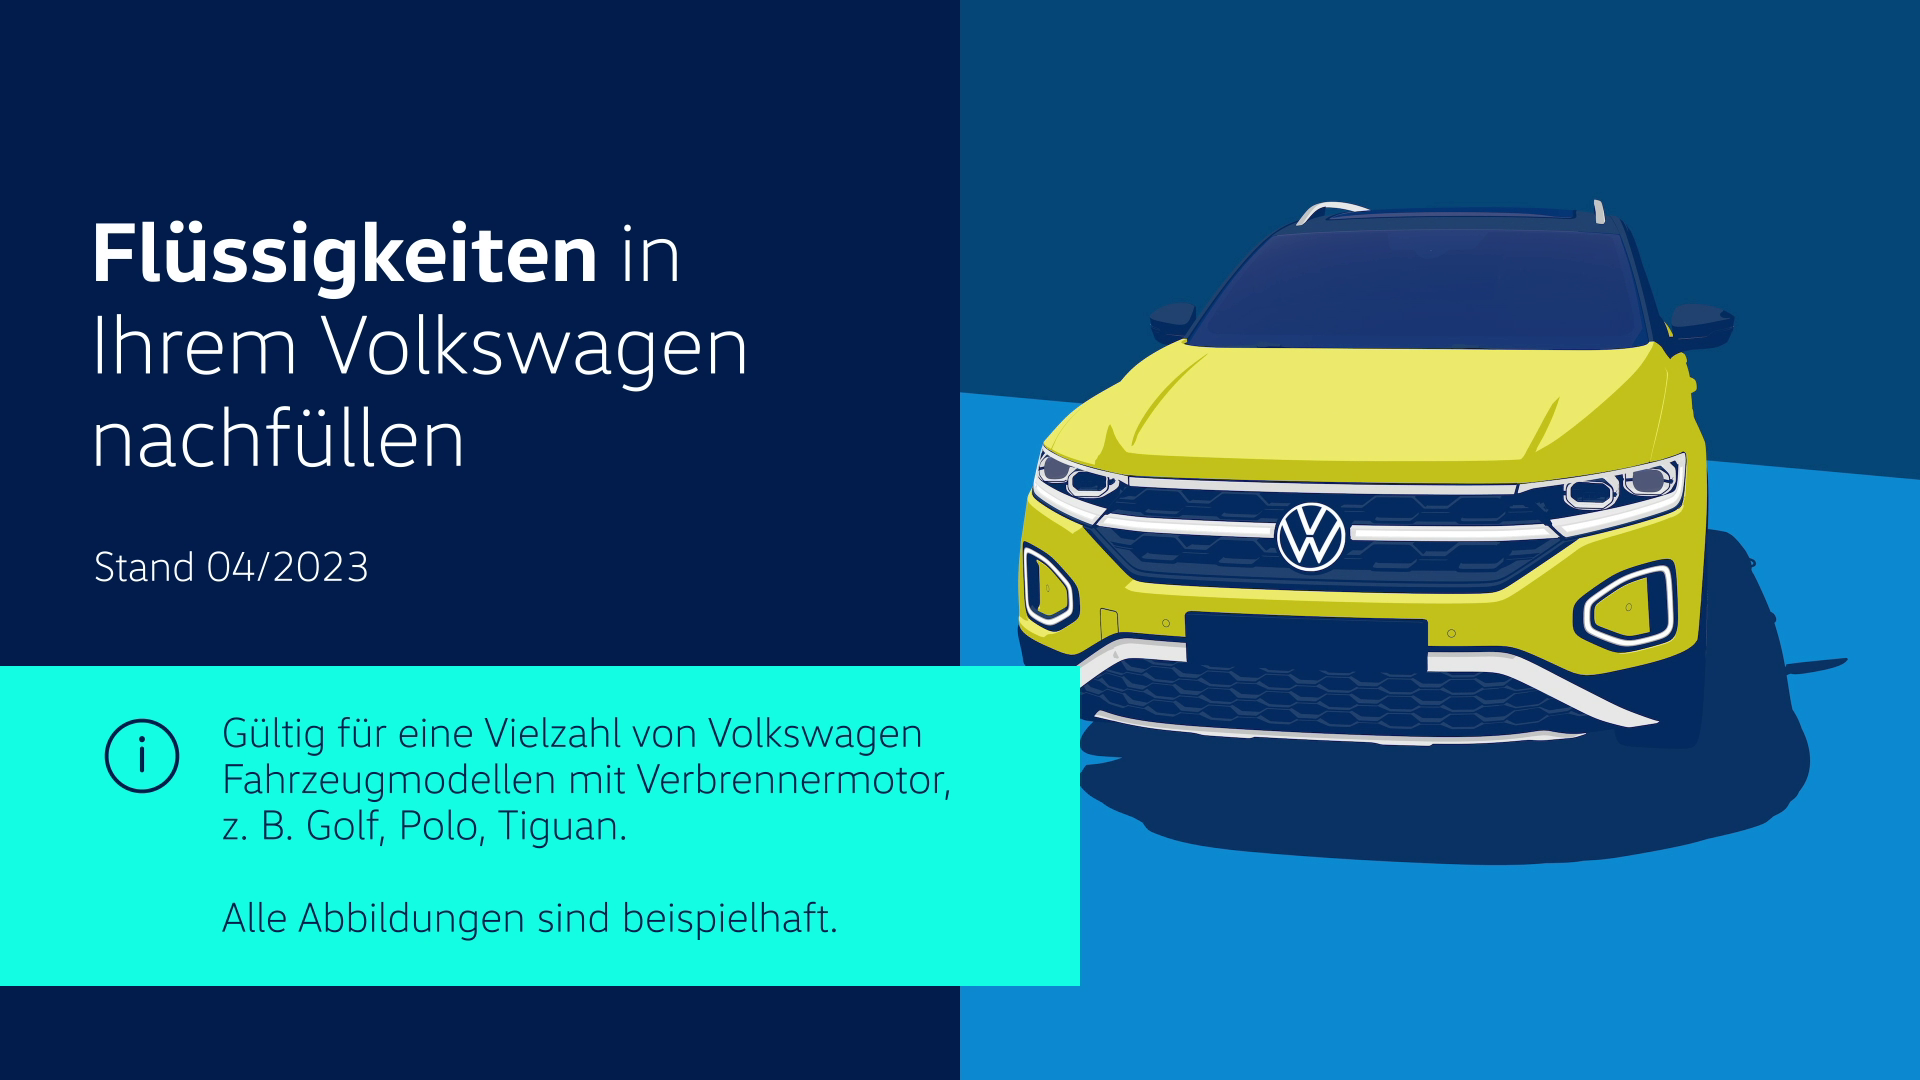 Vorschaubild zum Volkswagen Video-Flüssigkeiten nachfüllen